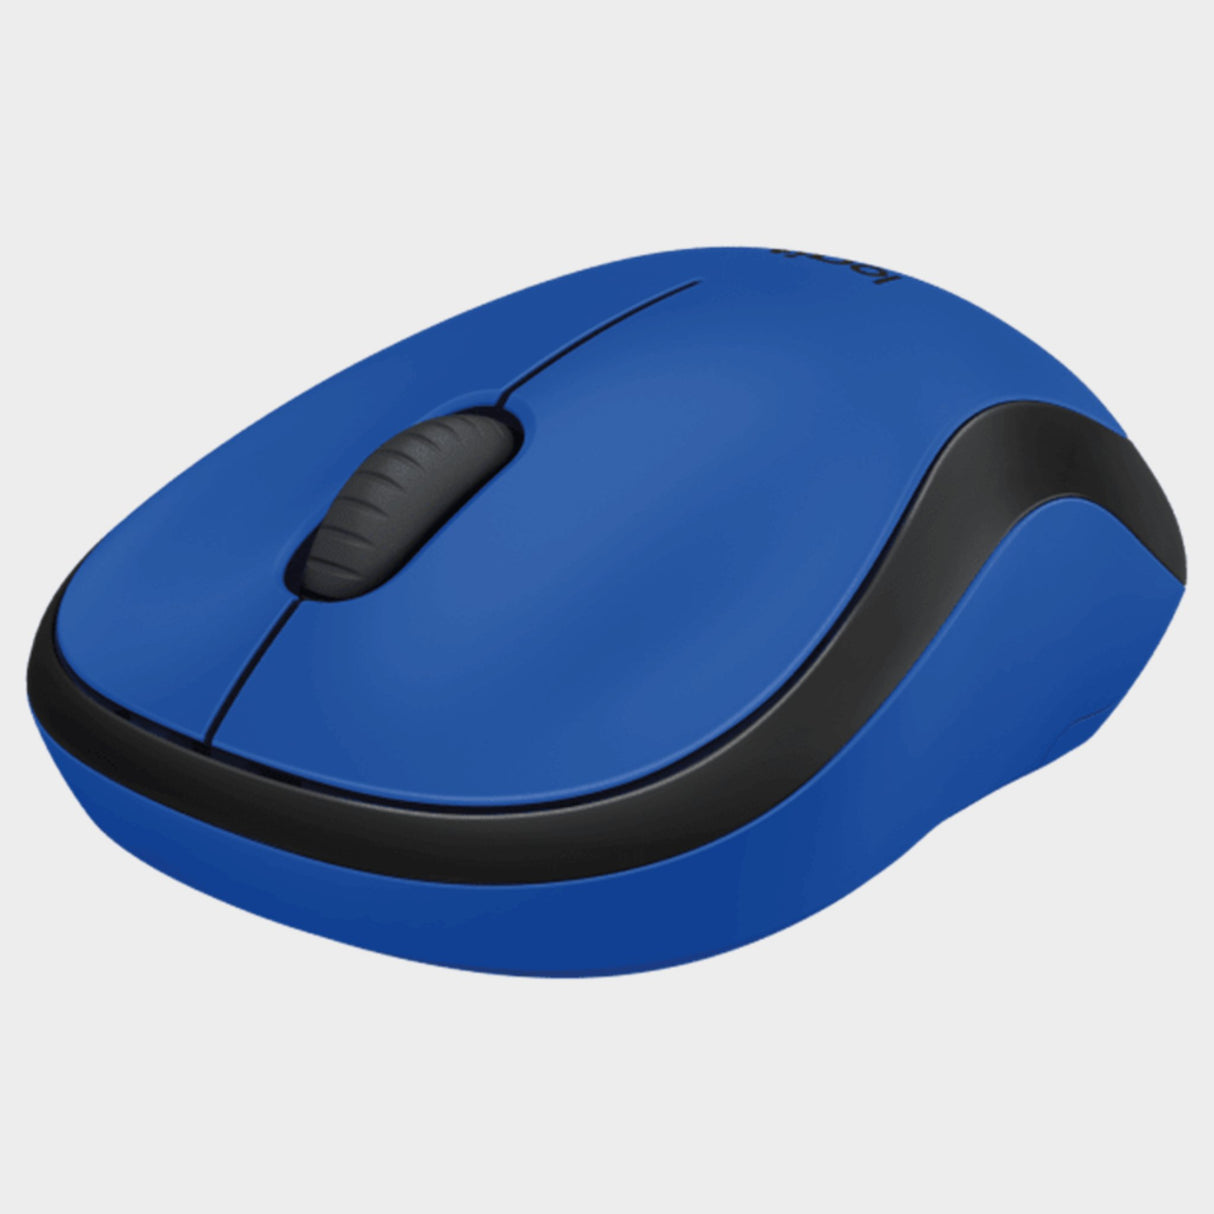 Logitech M-220 Silent Wireless Mouse – Blue - KWT Tech Mart